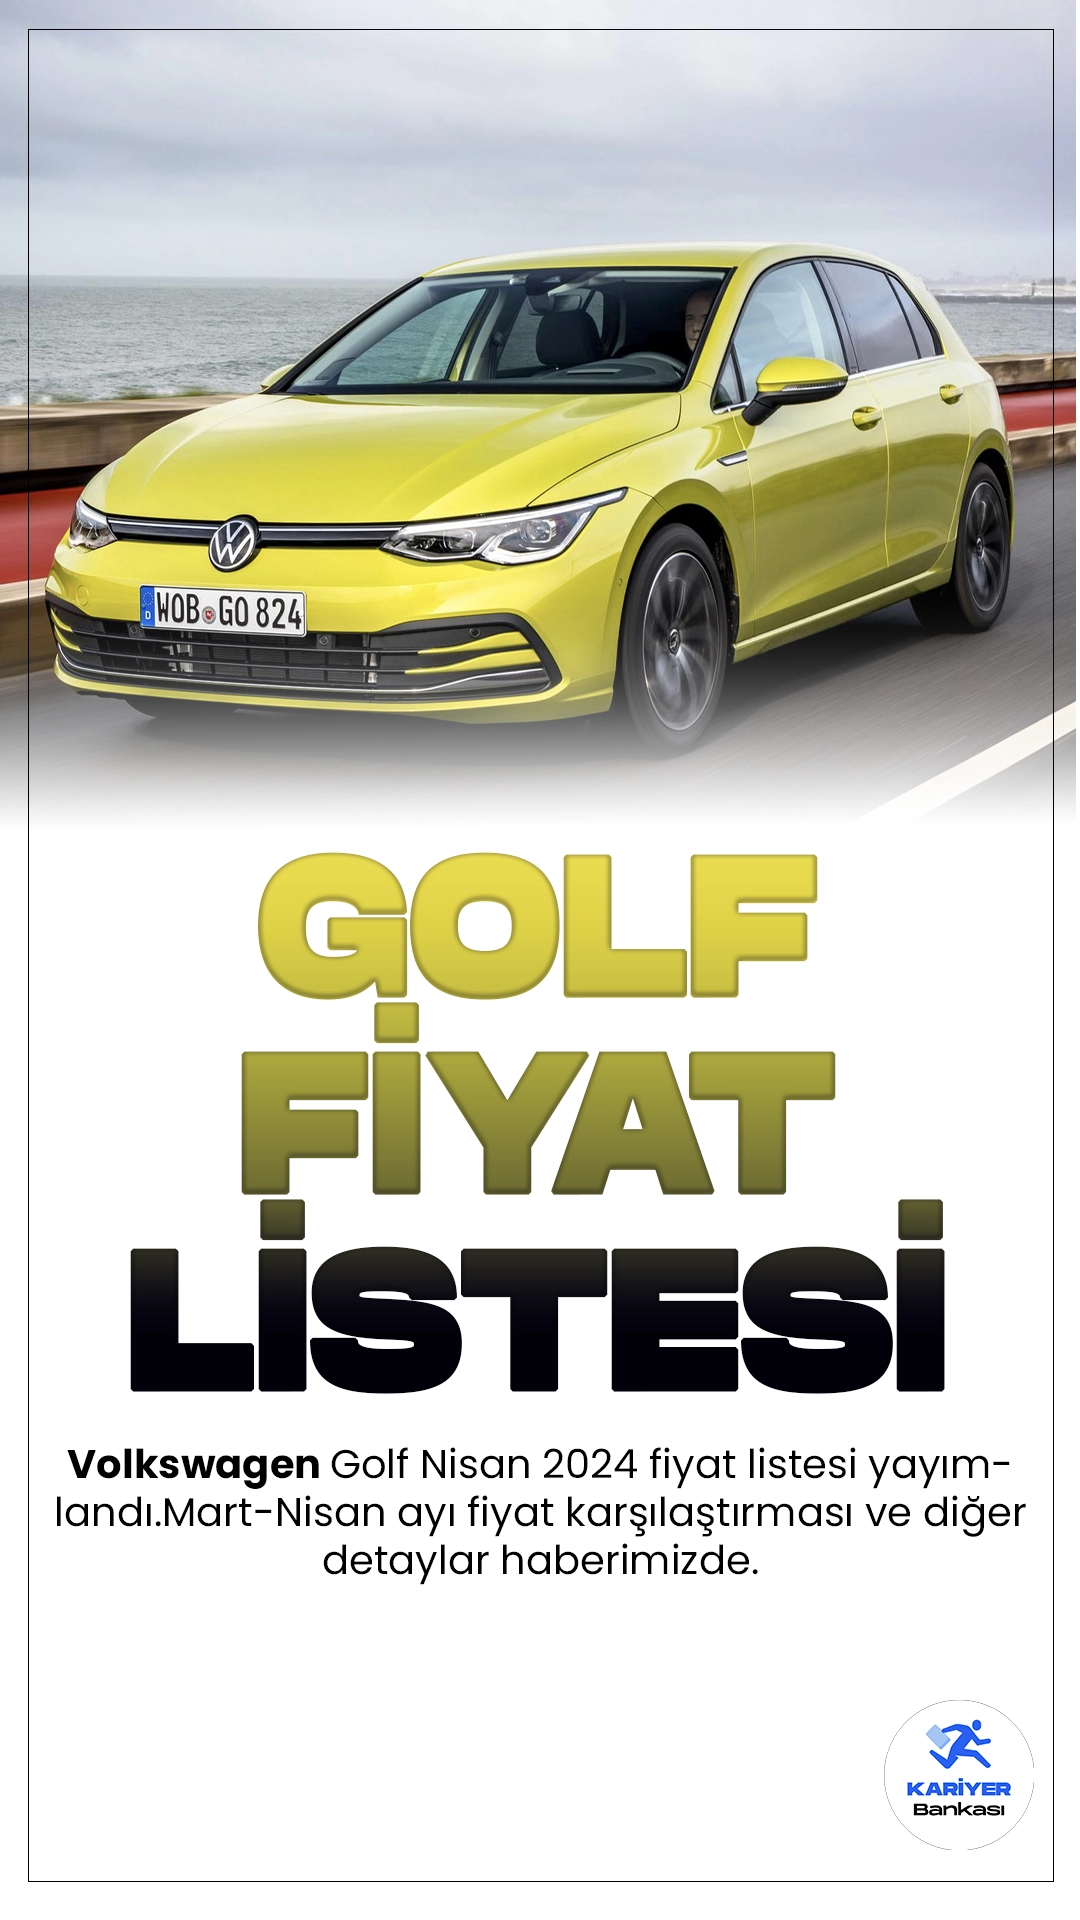 Volkswagen Golf Nisan 2024 Fiyat Listesi Yayımlandı.Volkswagen, otomotiv dünyasının öncü isimlerinden biri olarak, her yeni modelinde teknoloji ve konforu bir araya getirme konusunda çığır açmaya devam ediyor. Son olarak, efsanevi Golf serisinin yeni neslini sunuyor; ve bu yeni nesil, beklentileri bir kez daha aşıyor.